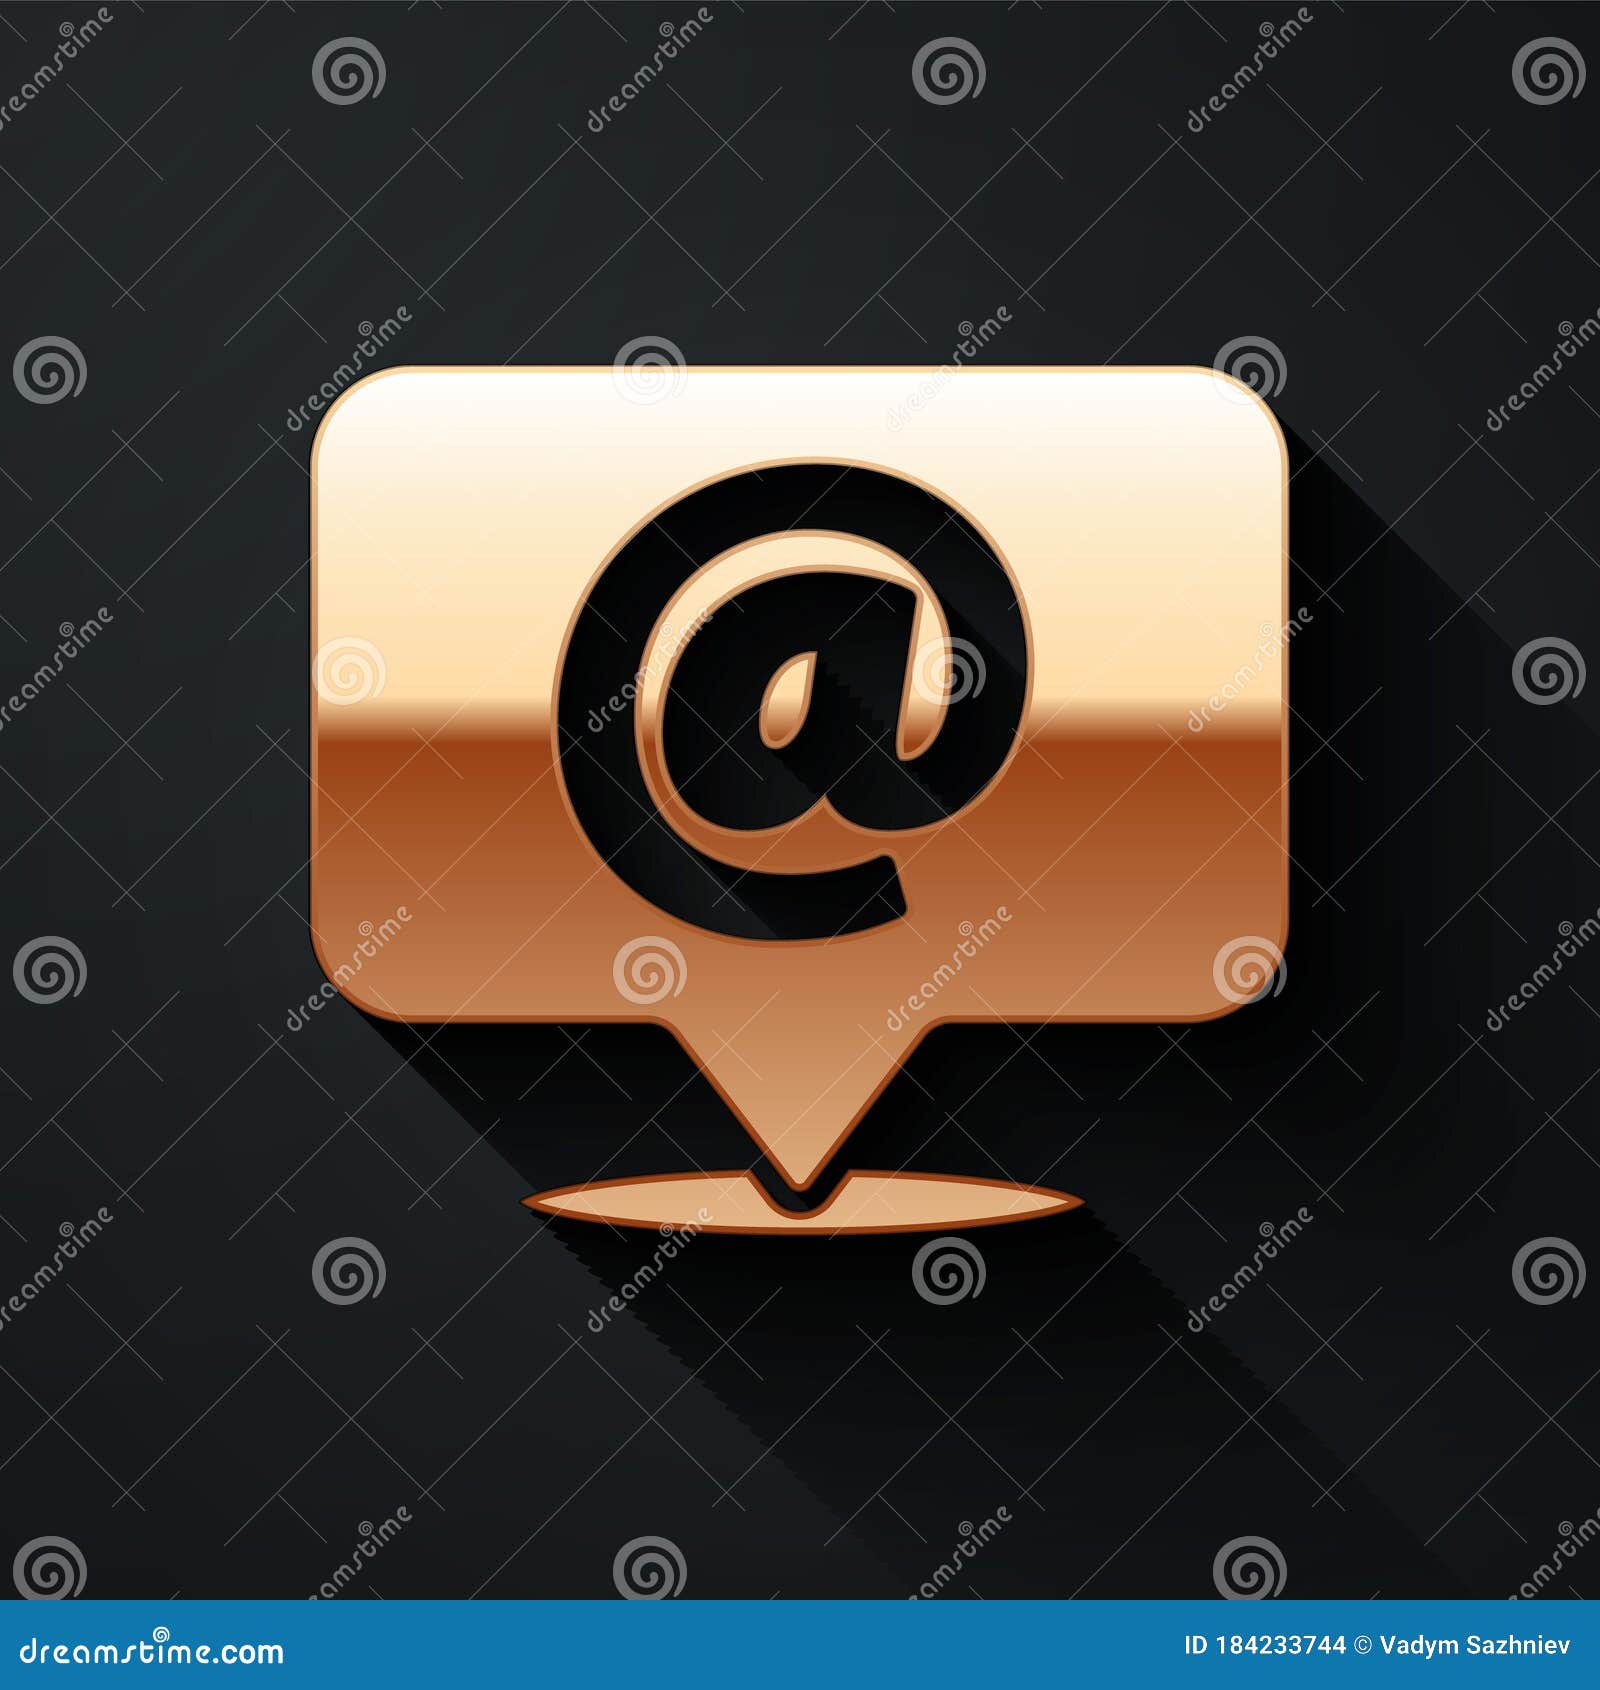 Gold Mail and E-mail Icon là một bộ sưu tập biểu tượng đường thư điện tử đầy độc đáo và quyến rũ. Với các biểu tượng được thiết kế bằng vàng, bạn sẽ khiến khách hàng mê mẩn và chú ý đến những sản phẩm của bạn. Hãy tạo sự ấn tượng khó quên cho khách hàng của bạn với Gold Mail and E-mail Icon!